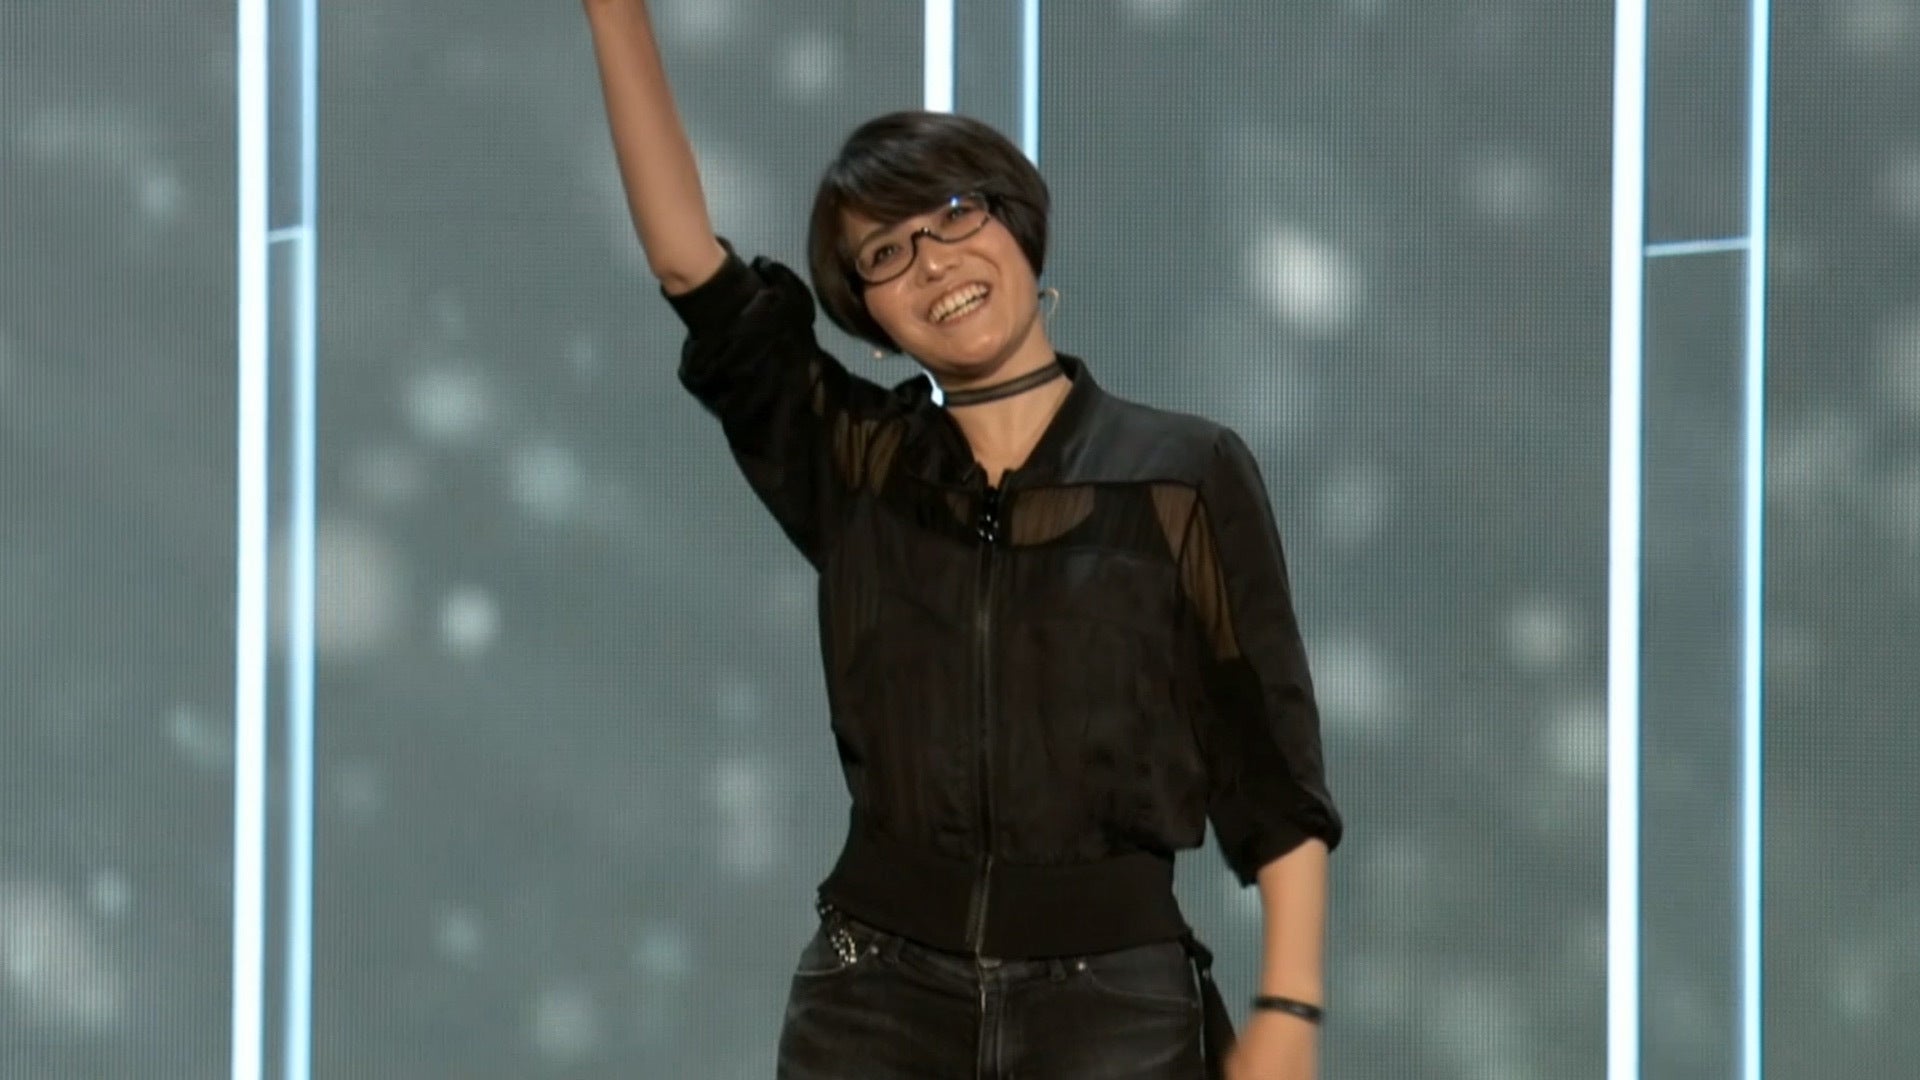 Ikumi Nakamura Deserved Her E3 Moment